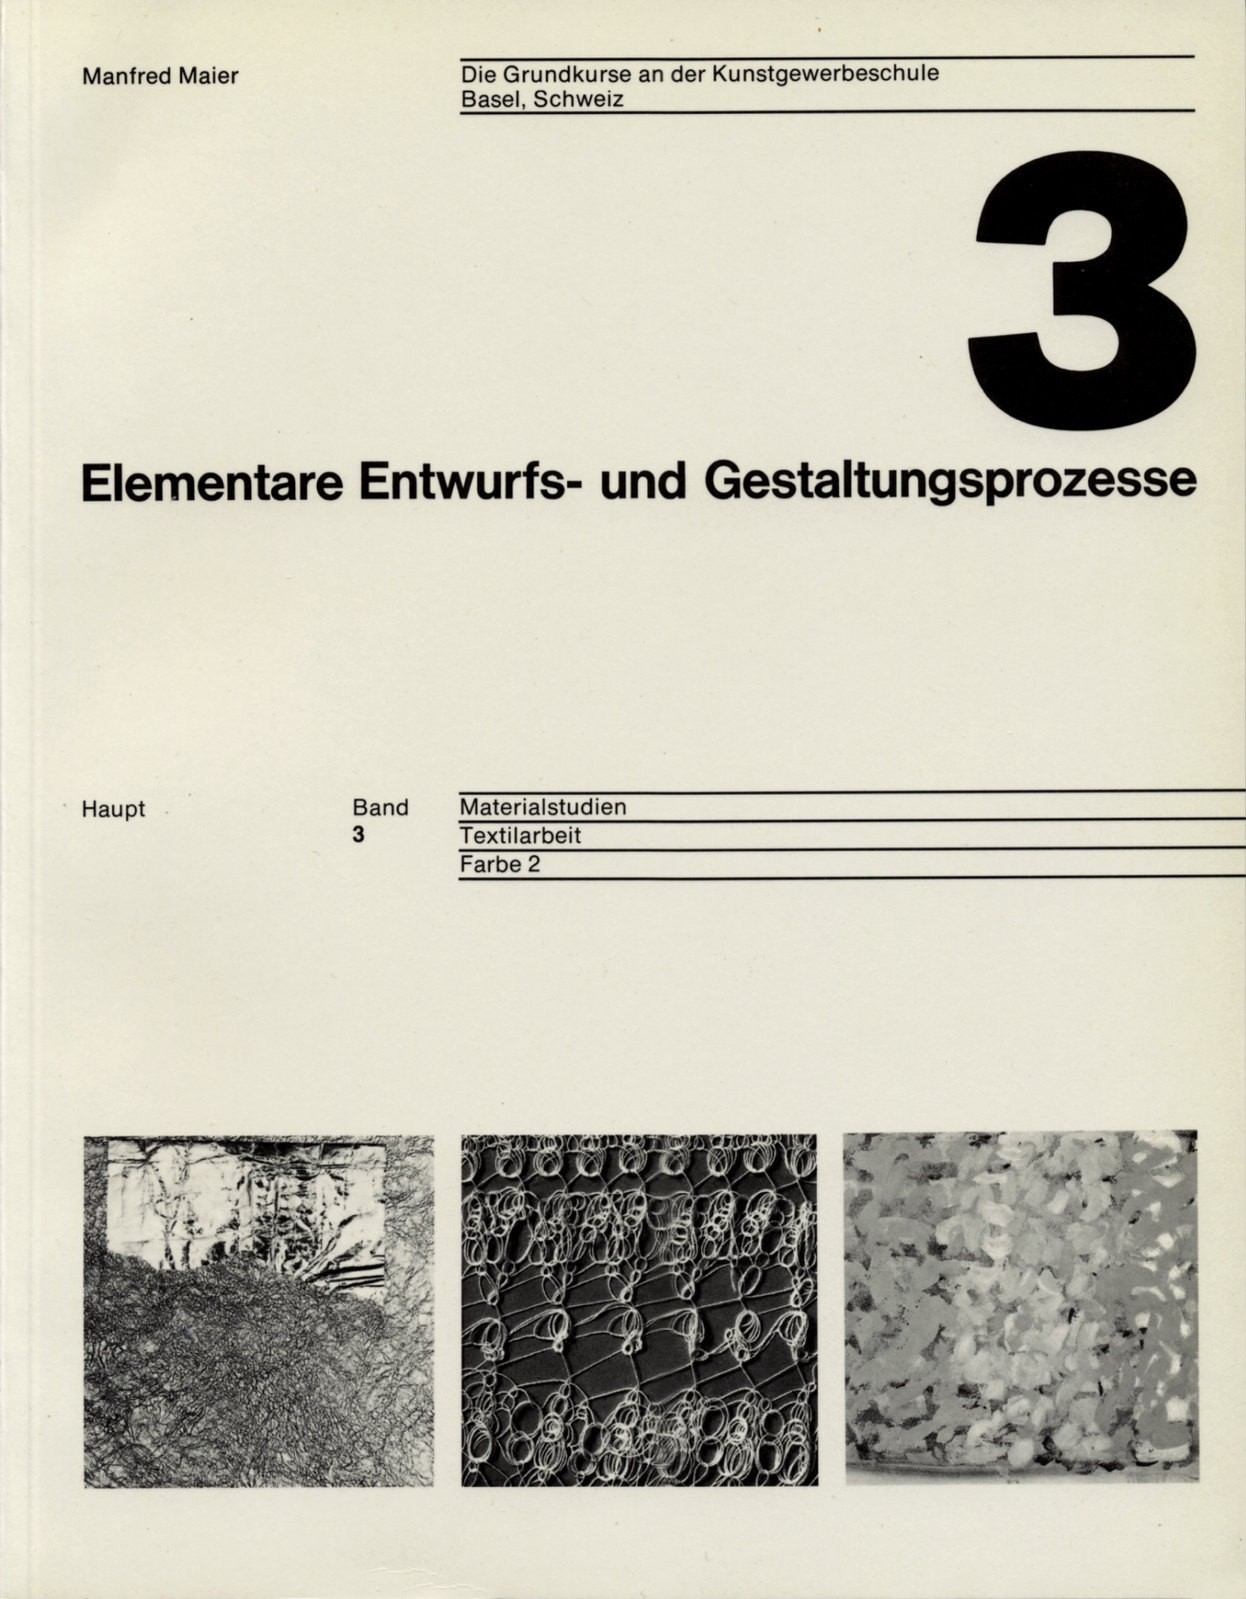 Wolfgang Weingart / Verlag Paul Haupt / Elementare Entwurfs- und Gestaltungsprozesse / Volume 3 / Cover / 1977